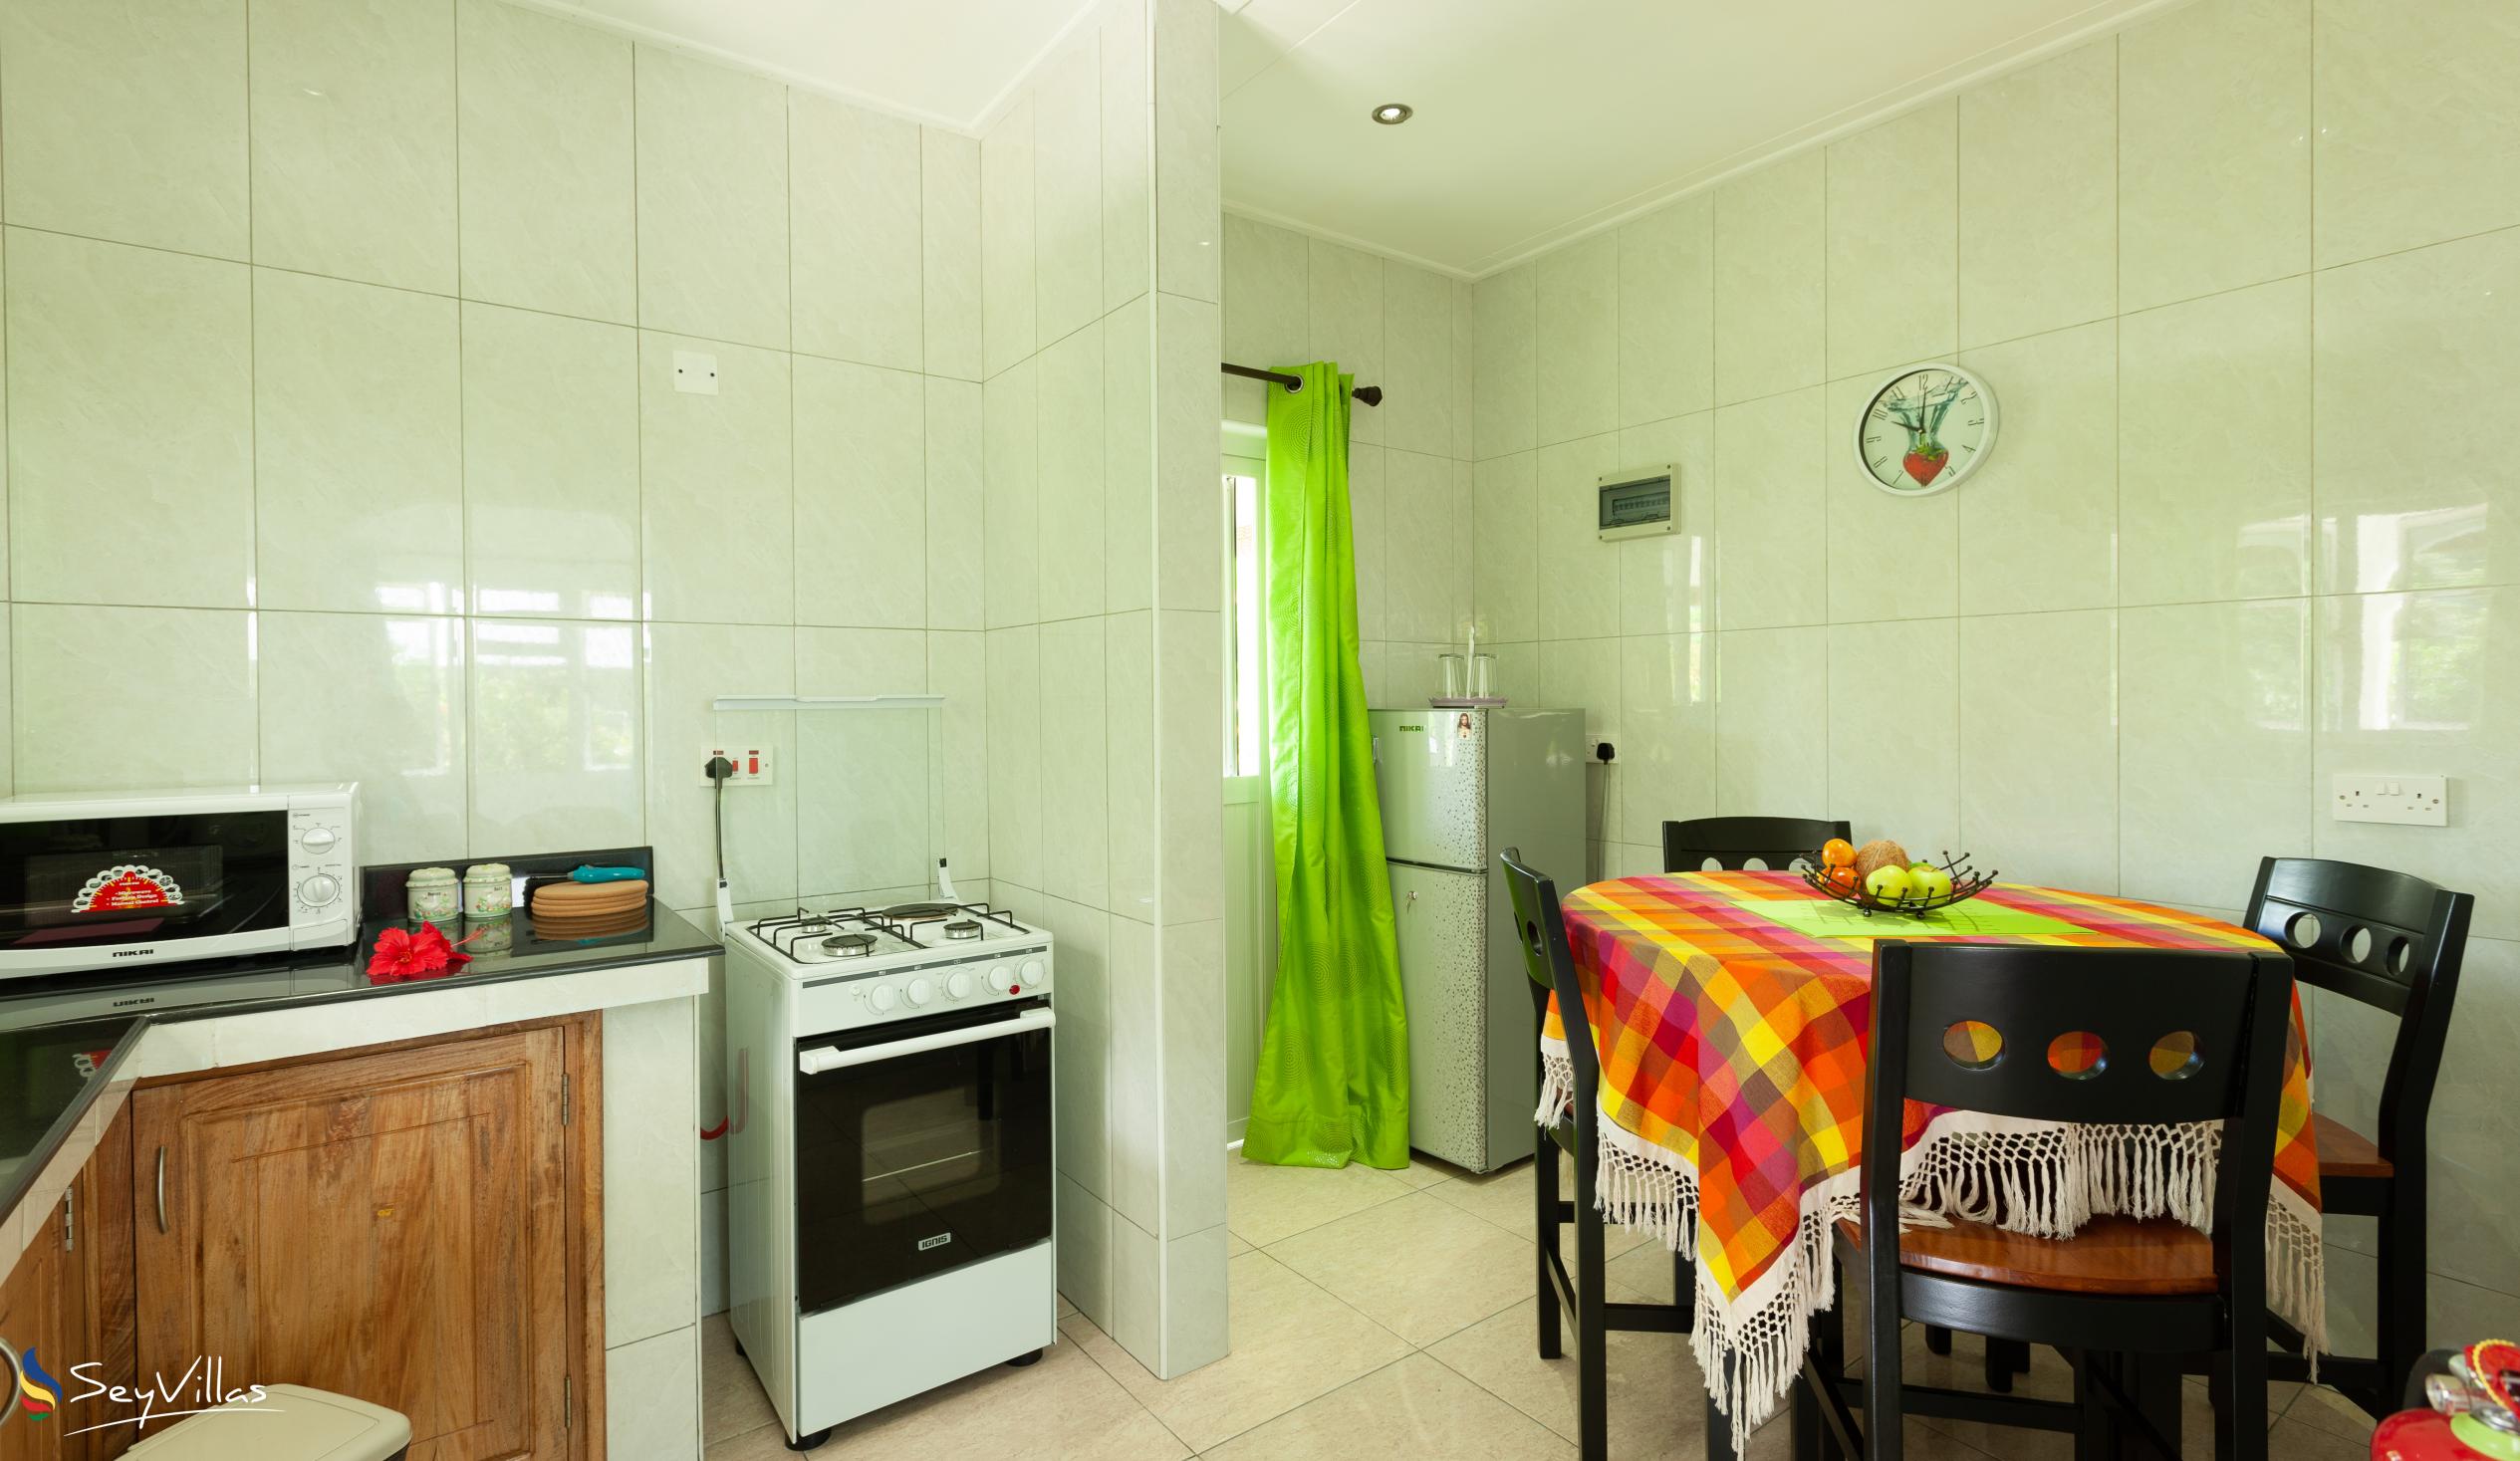 Foto 16: Destination Self-Catering - Villa mit 1 Schlafzimmer - Praslin (Seychellen)